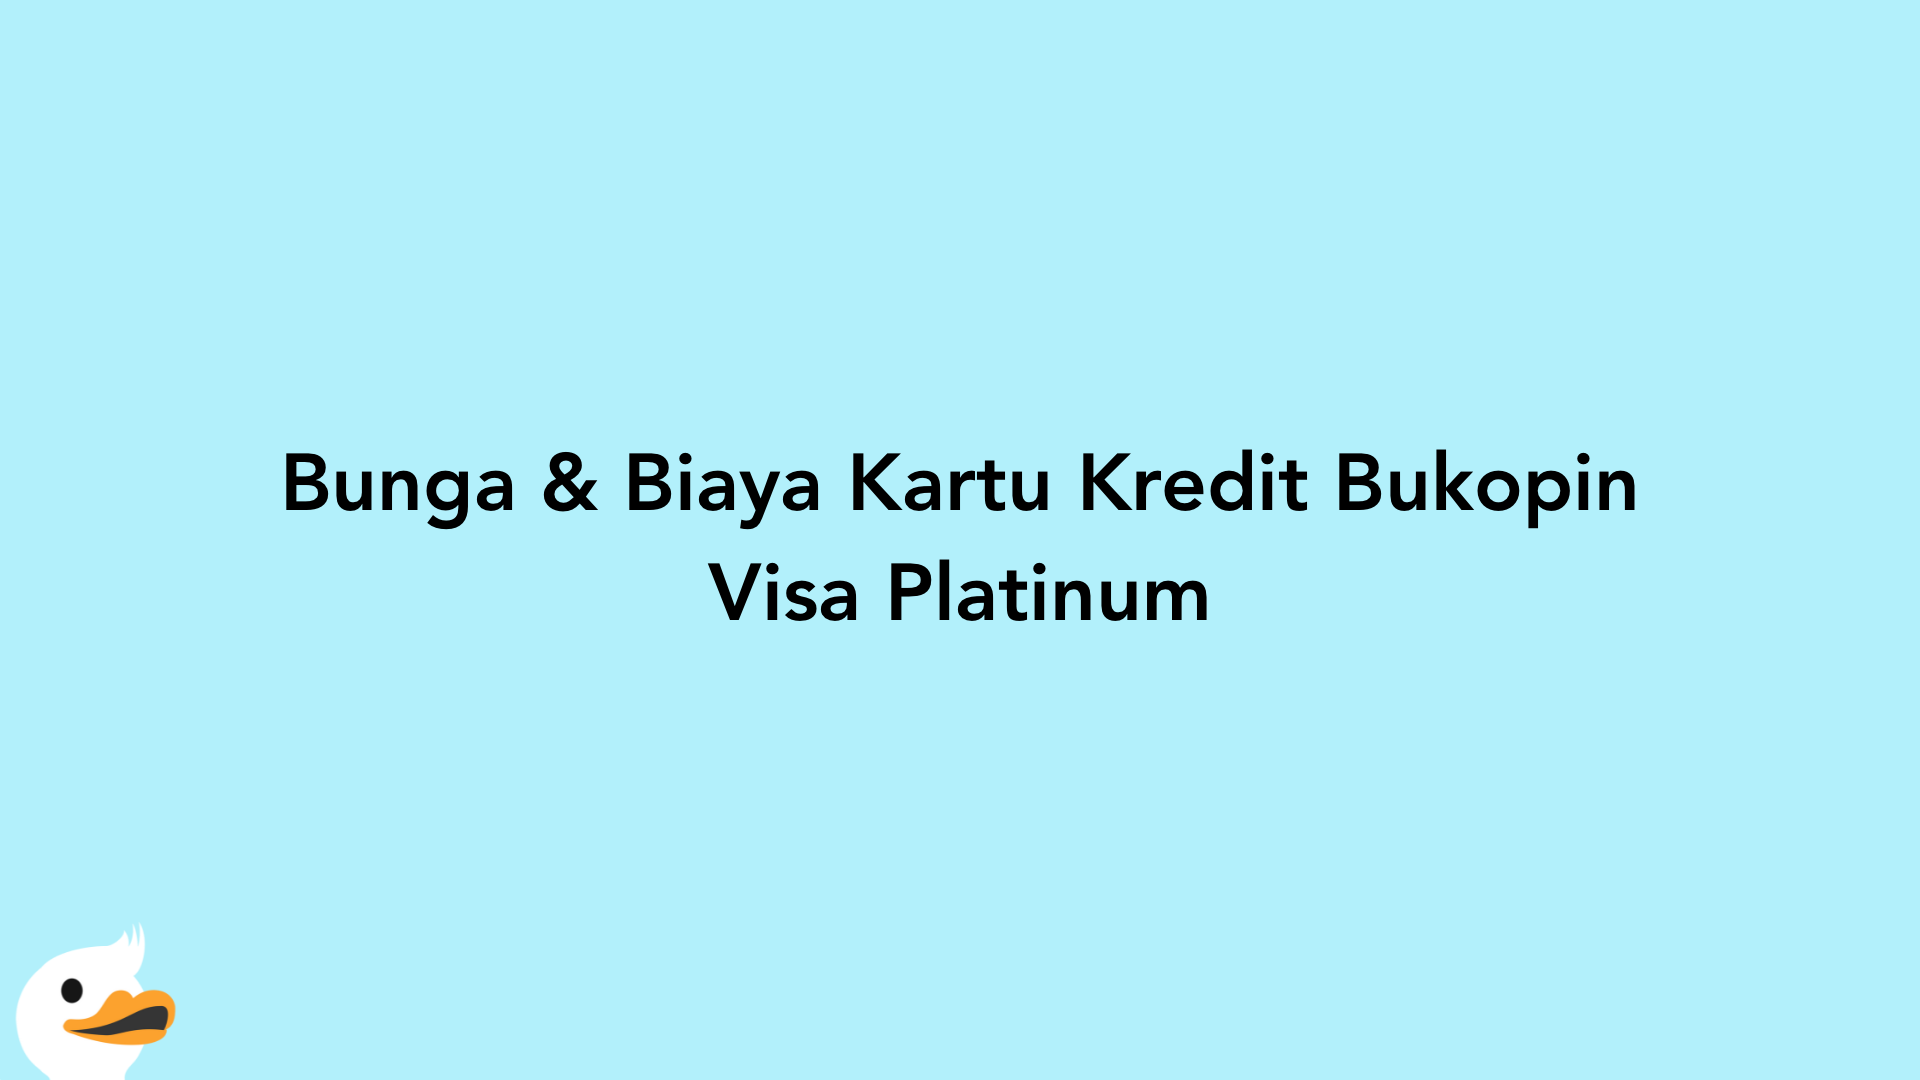 Bunga & Biaya Kartu Kredit Bukopin Visa Platinum